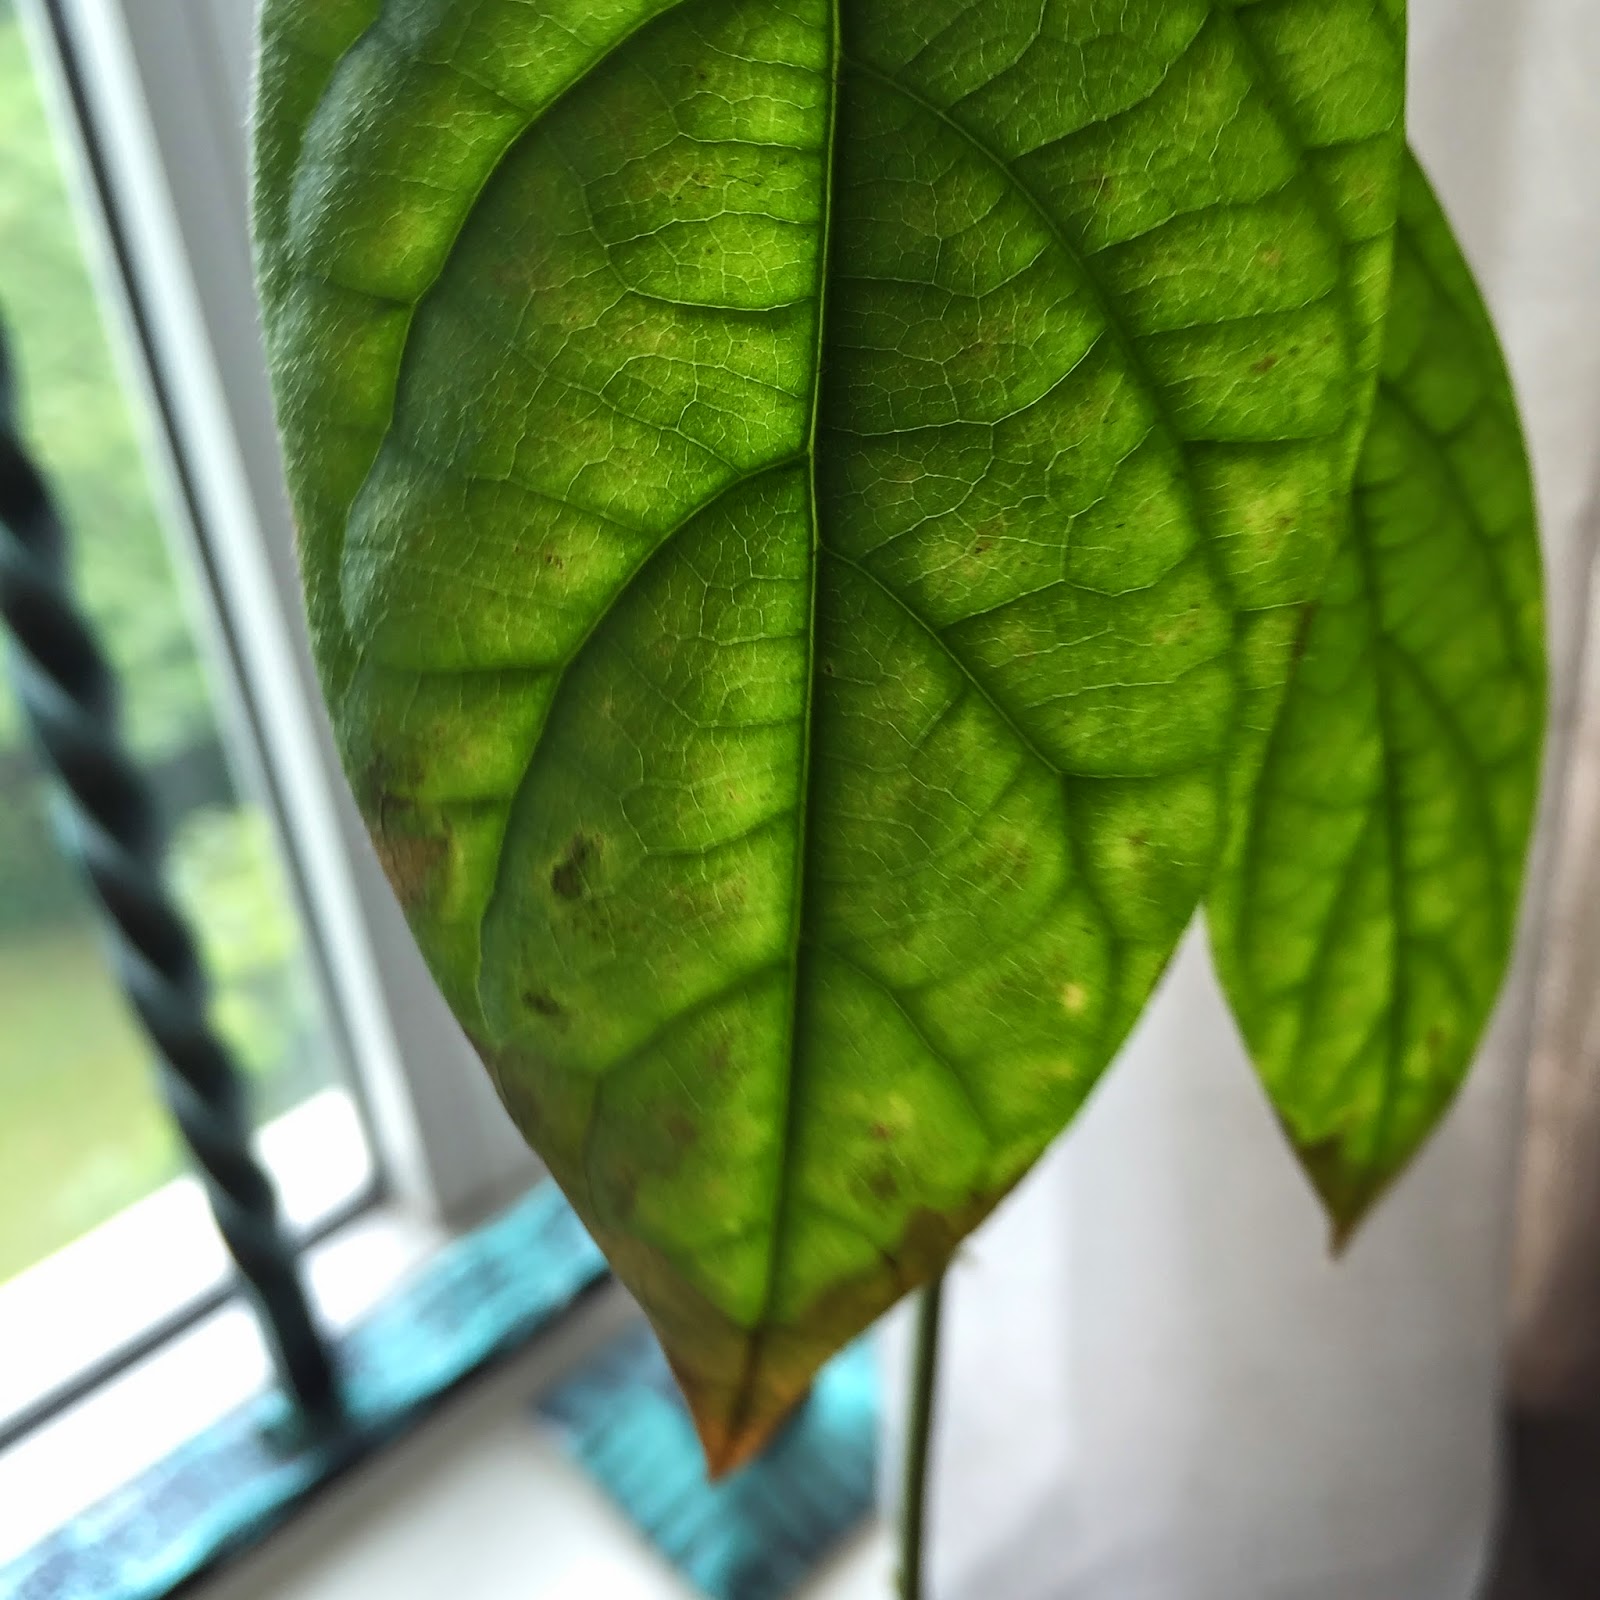 SG My Garden Good: Avocado leaf tips brown